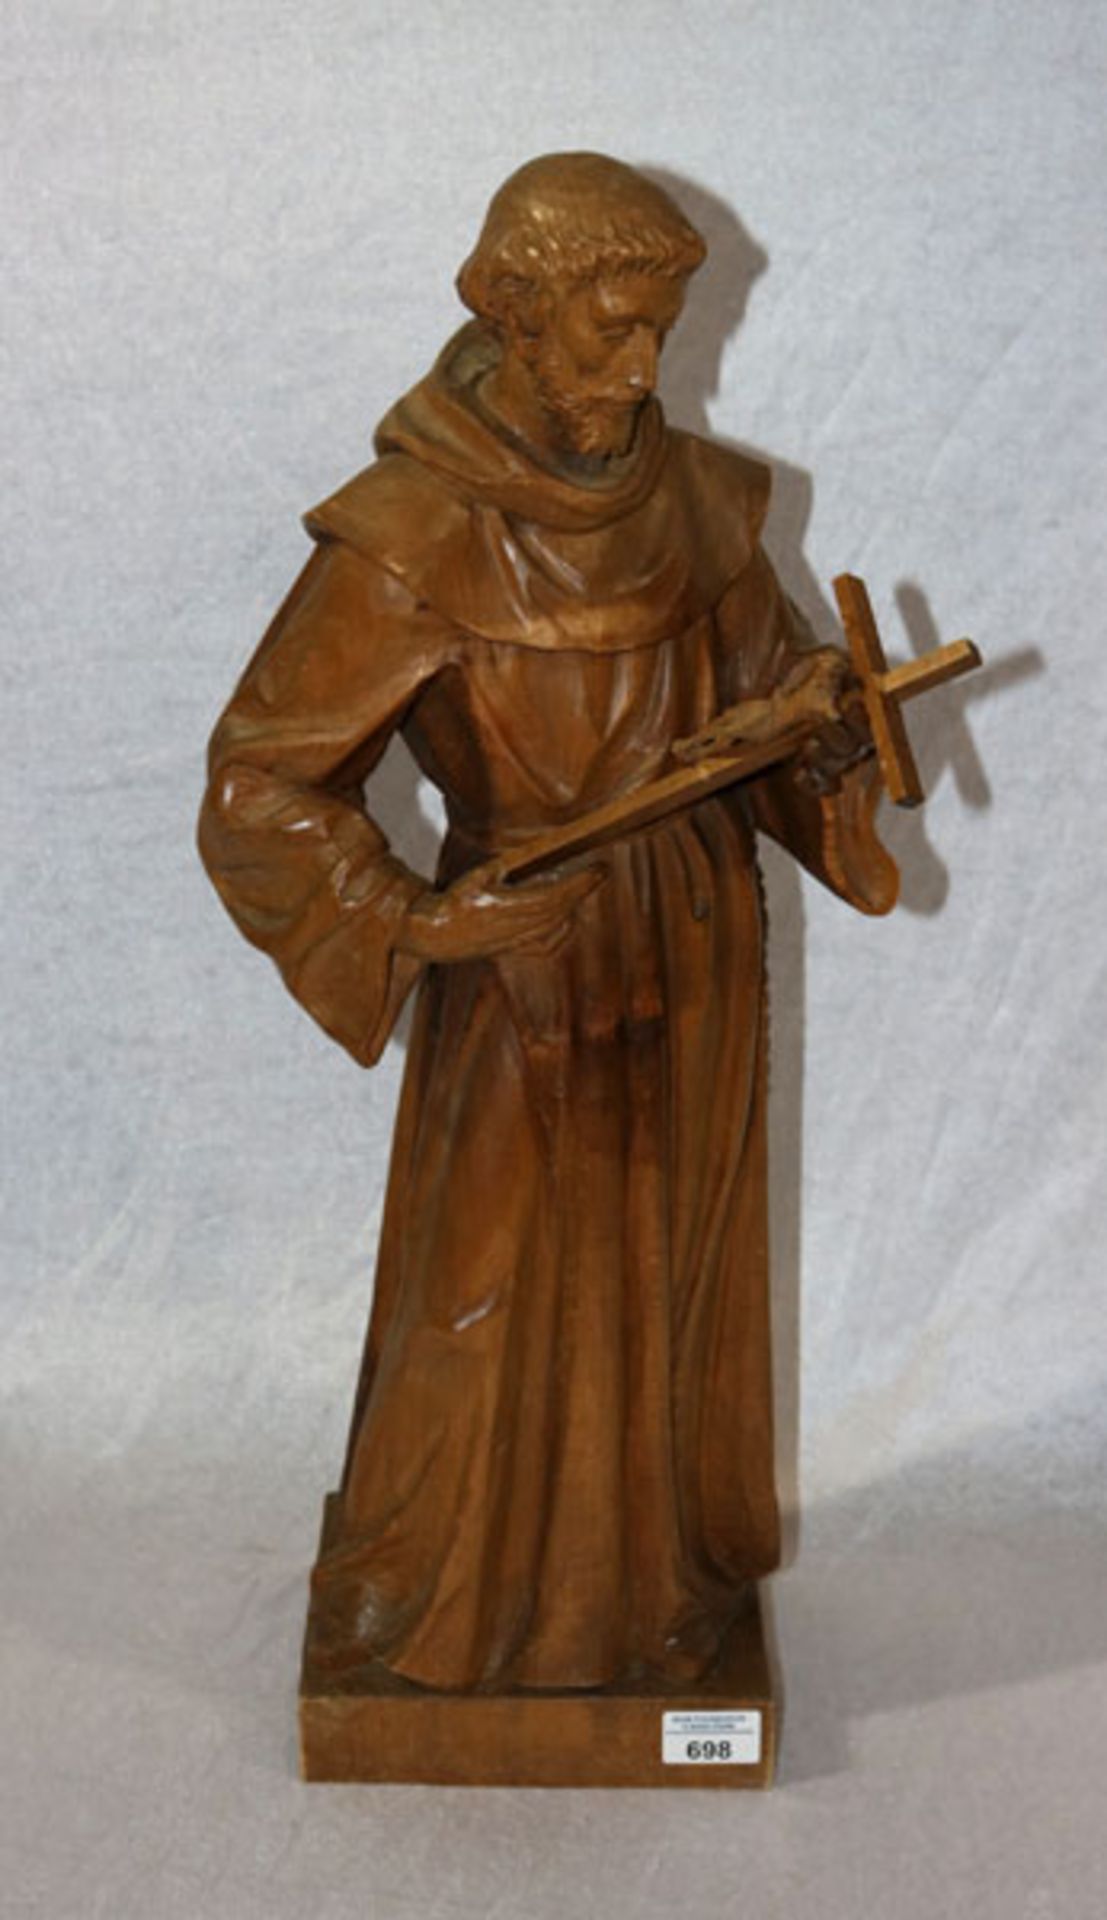 Holz Figurenskulptur 'St. Franziskus', Oberammergau, gebeizt, H 64 cm, teils bestossen und